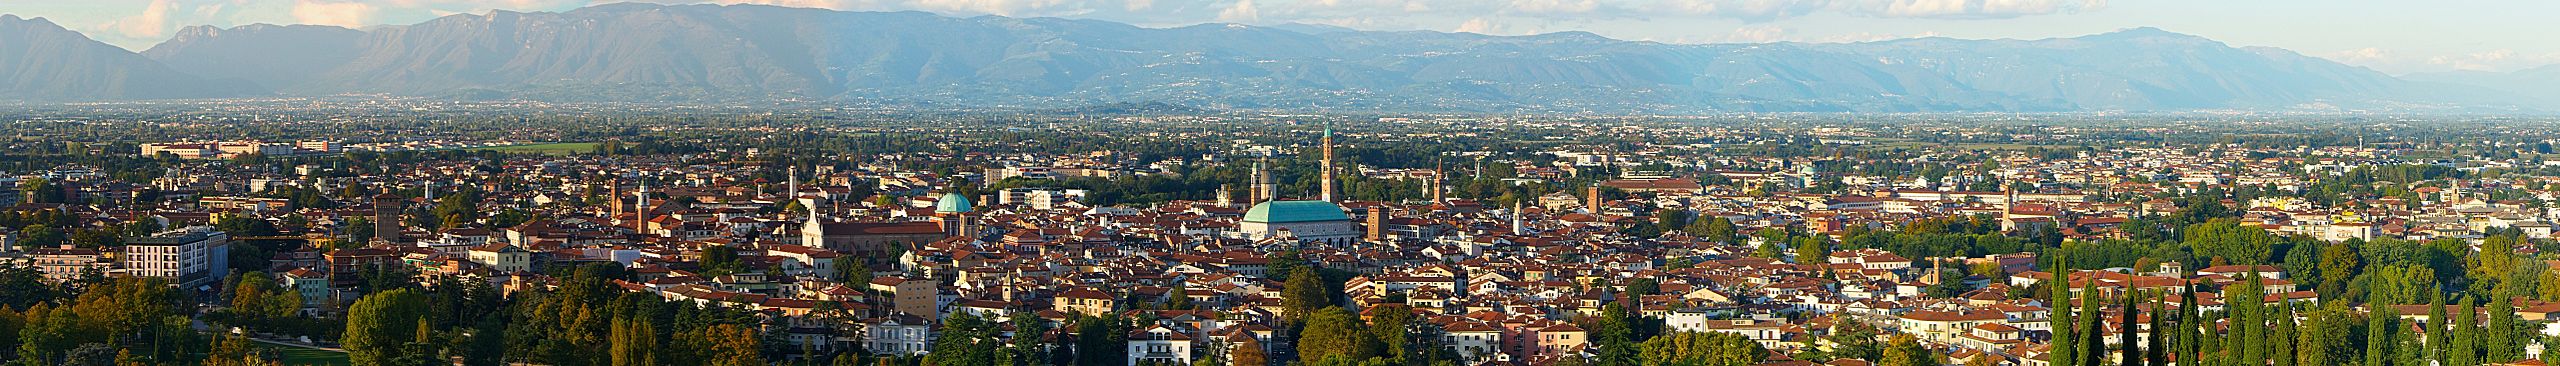 Adesivo Murale Profilo Skyline Città di Padova